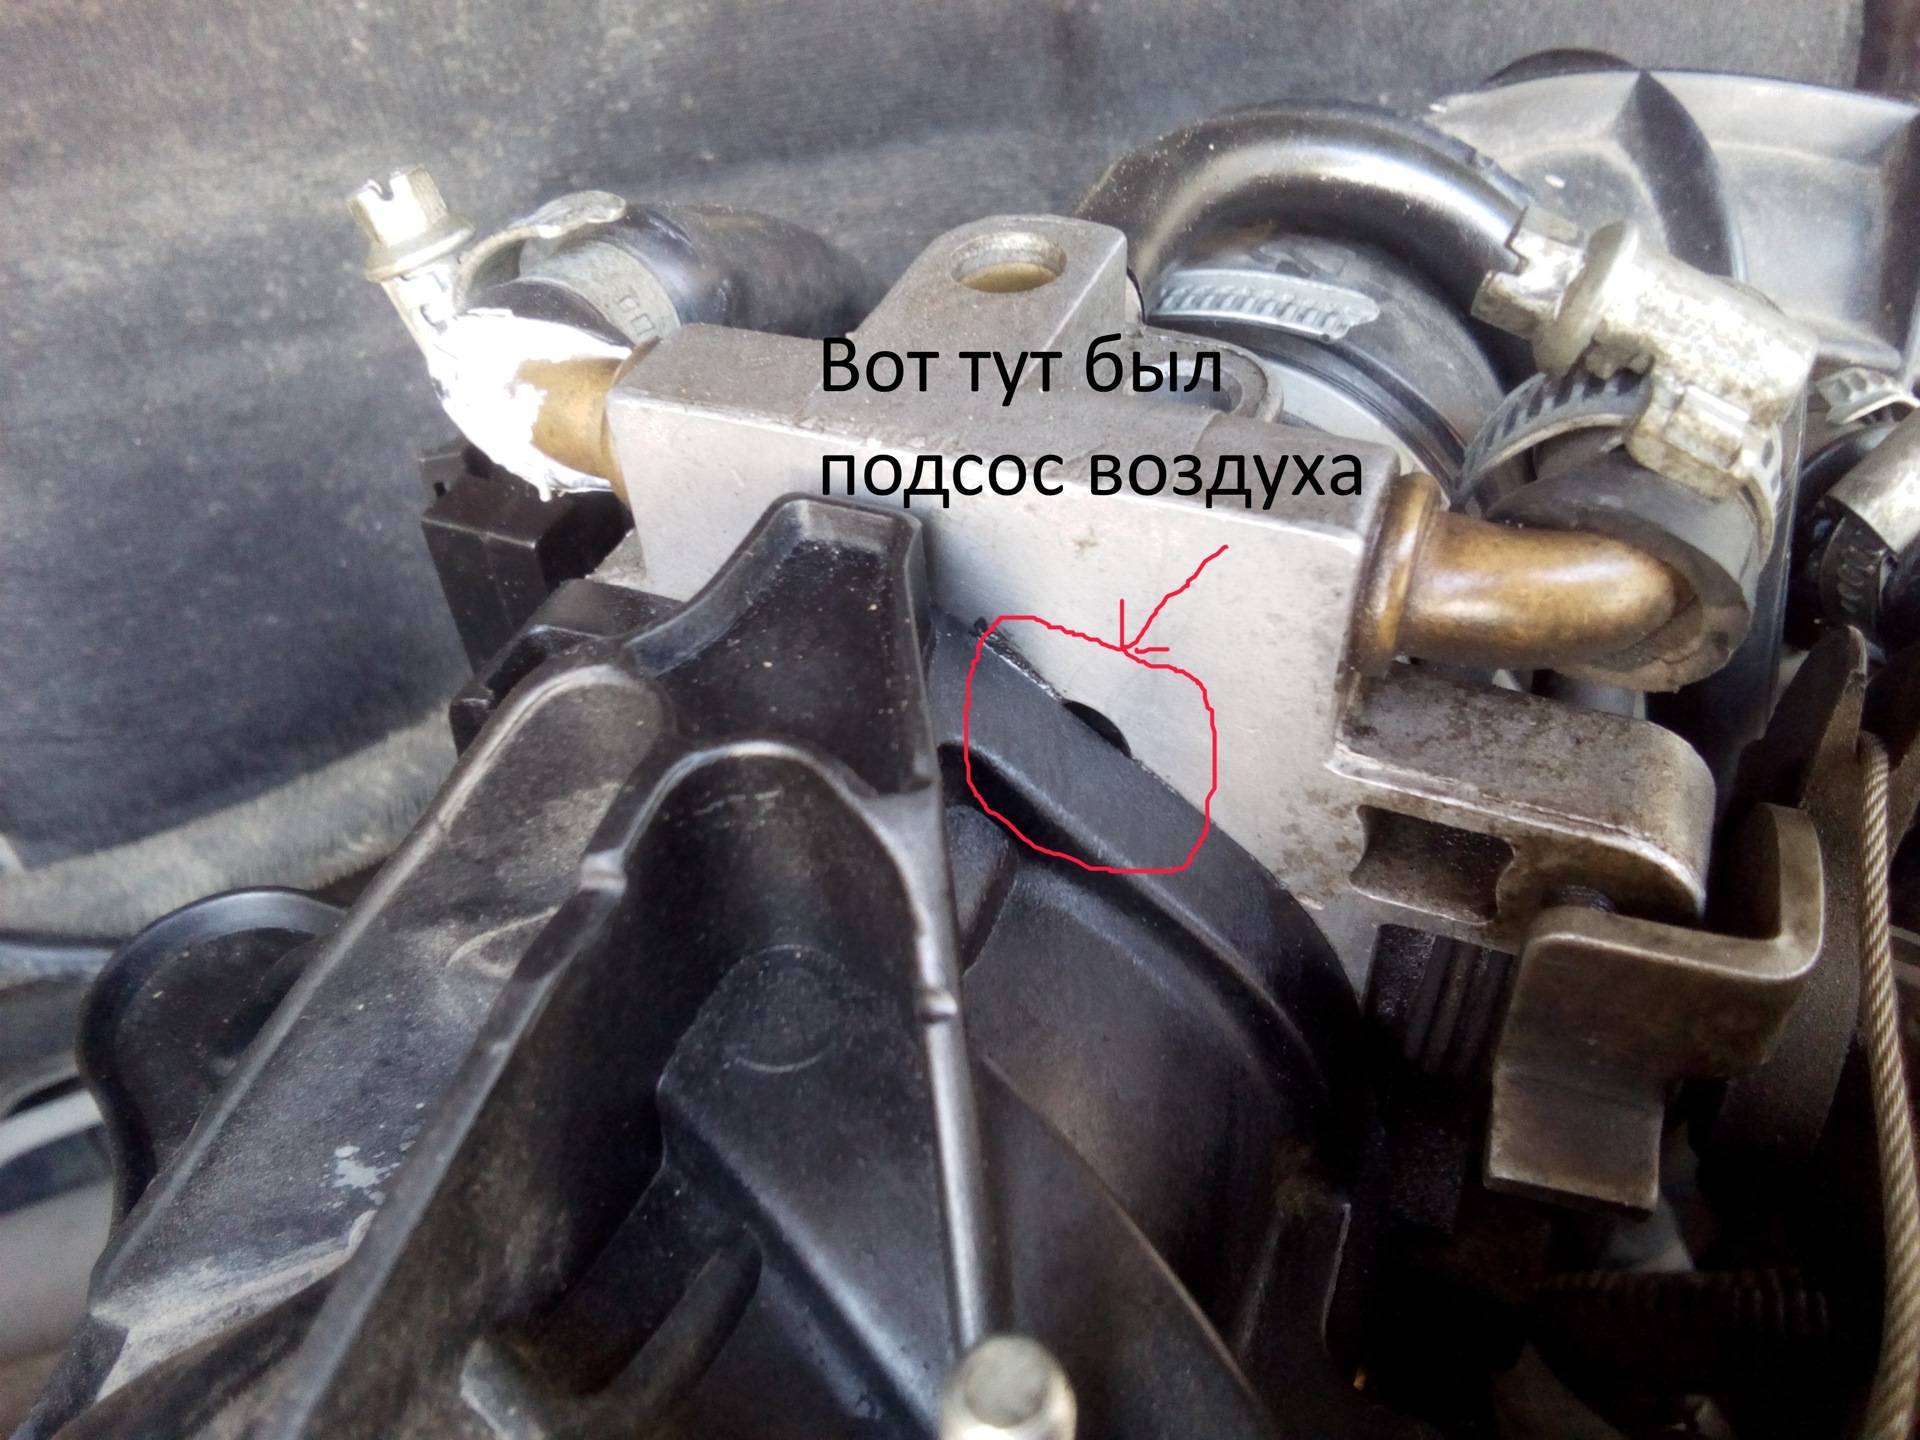 Лада ваз-2110 (2111, 2112). двигатель медленно сбрасывает обороты при отпускании педали газа